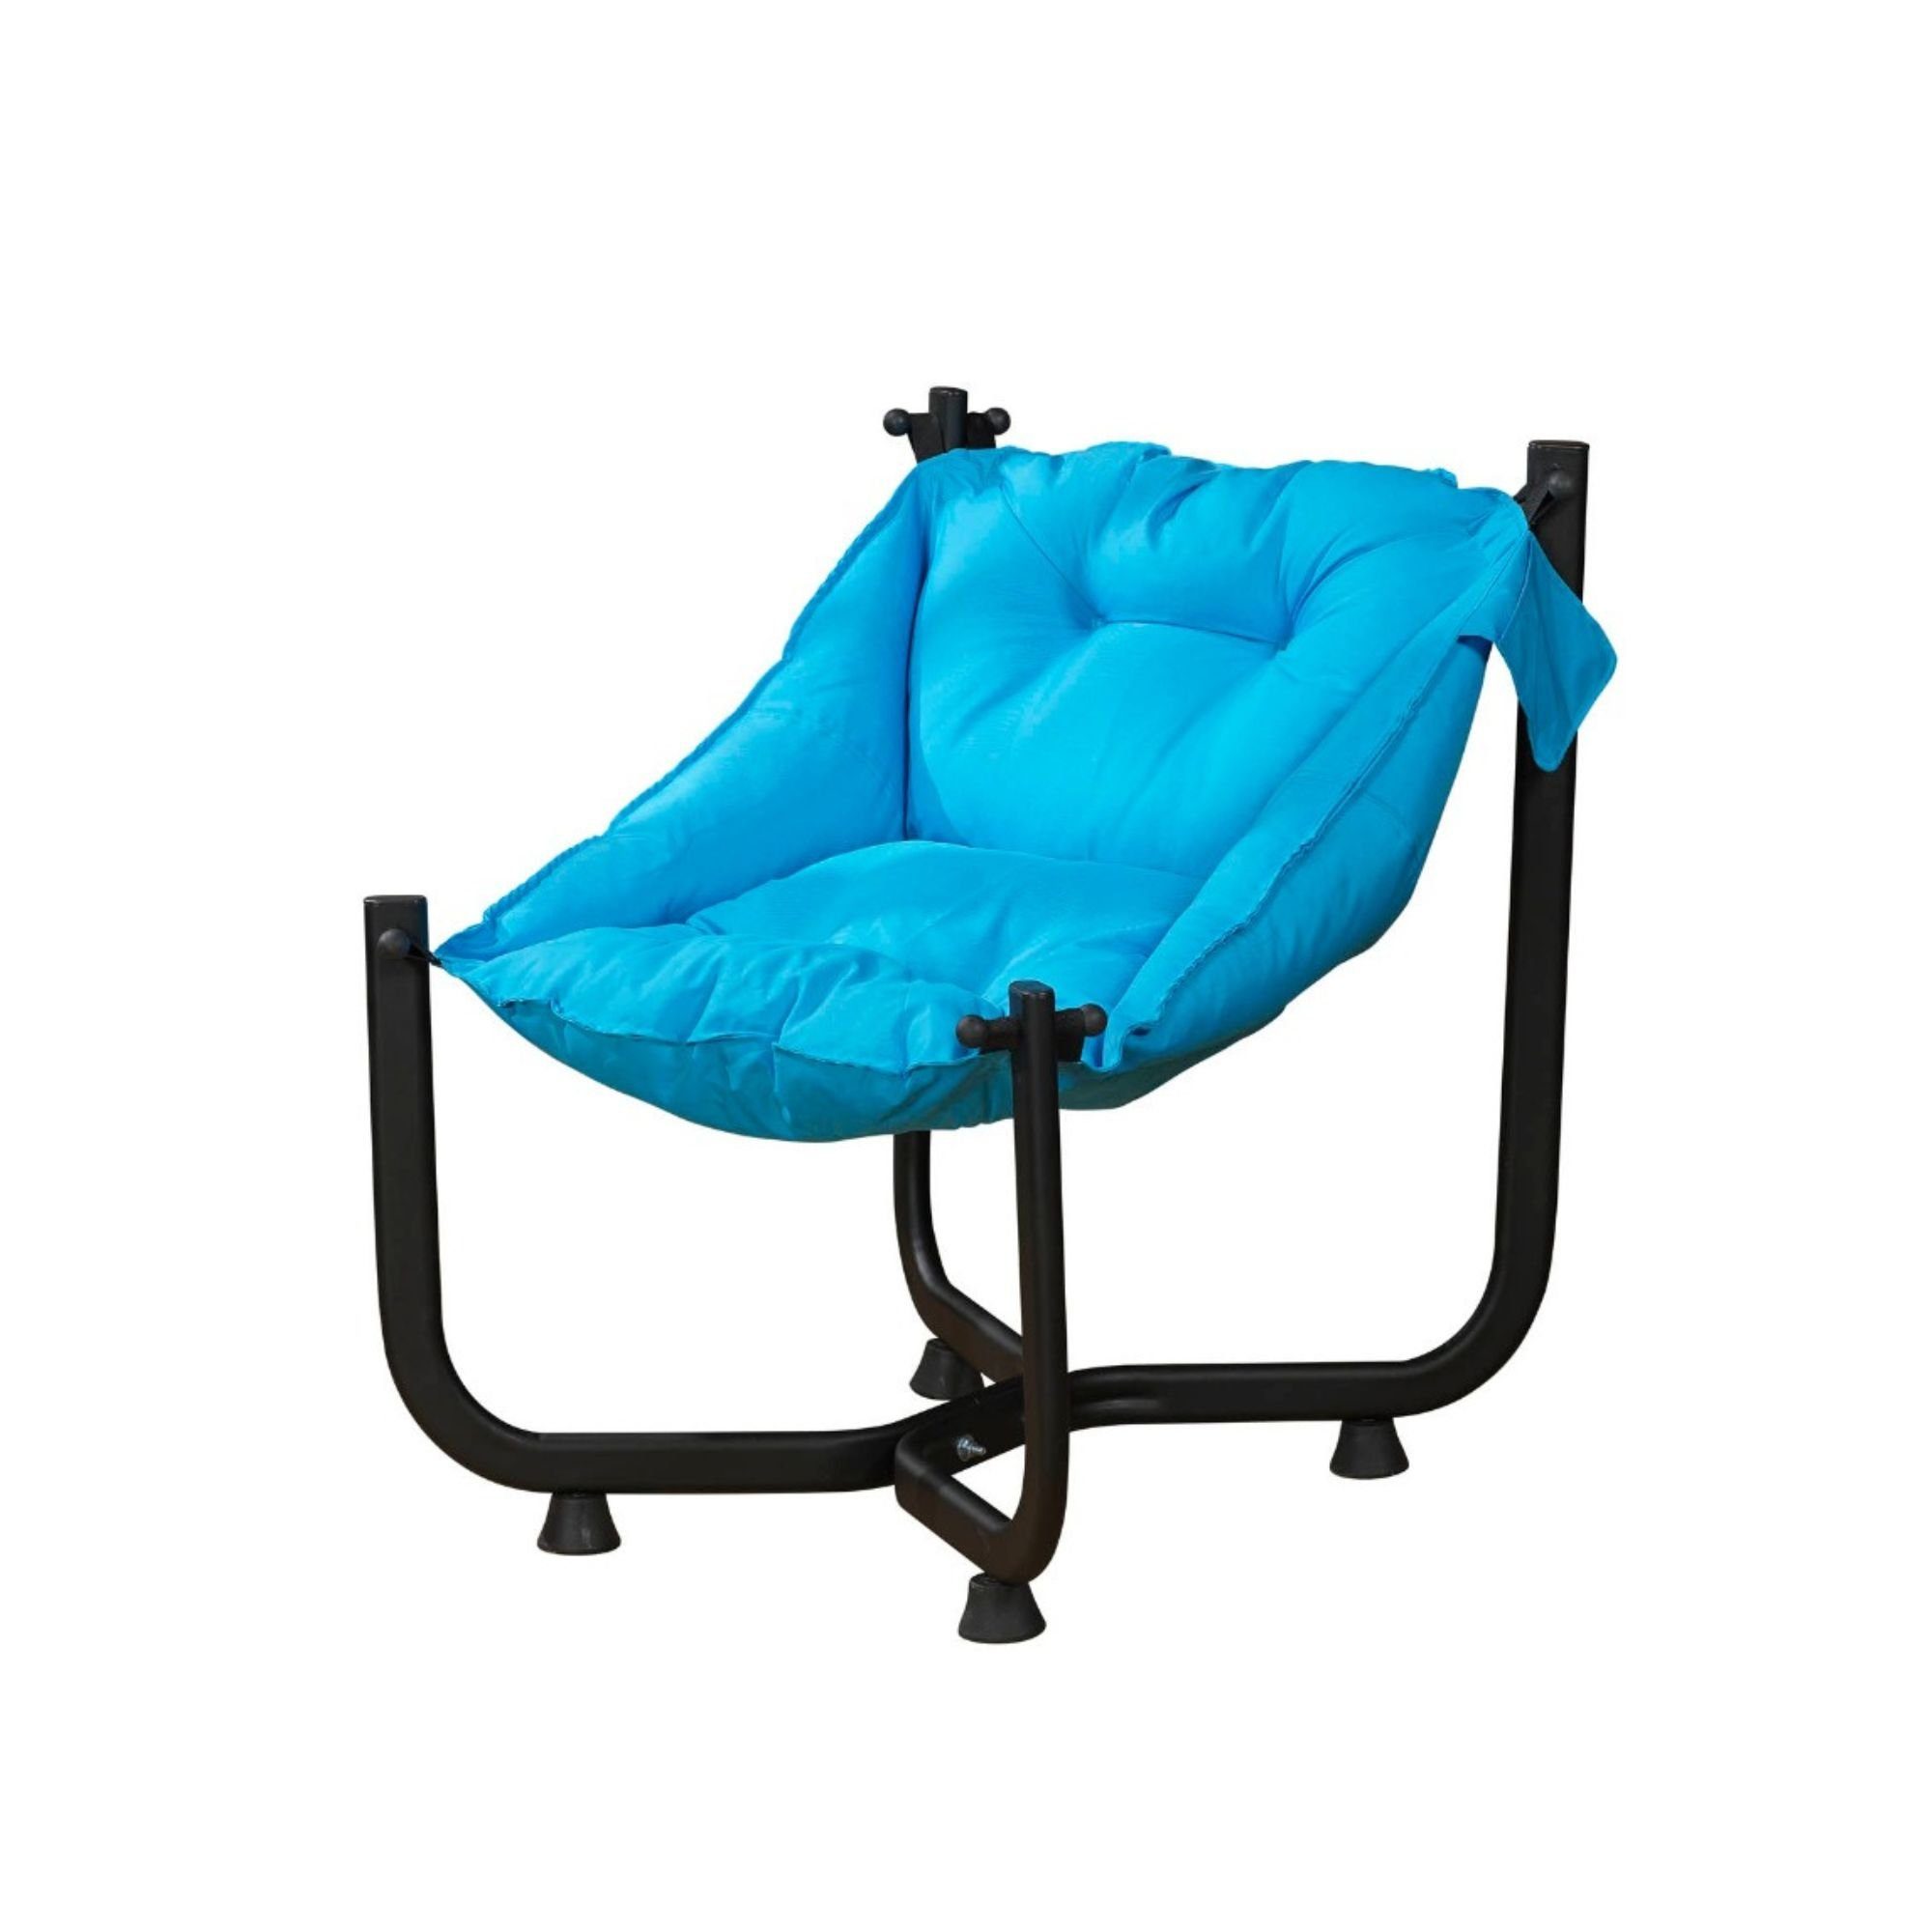 Kuffe Relaxsessel Paffia Relax Sessel mit Hängematte, gemütlicher Stuhl Sitzsack, Wasserabweisend Blau